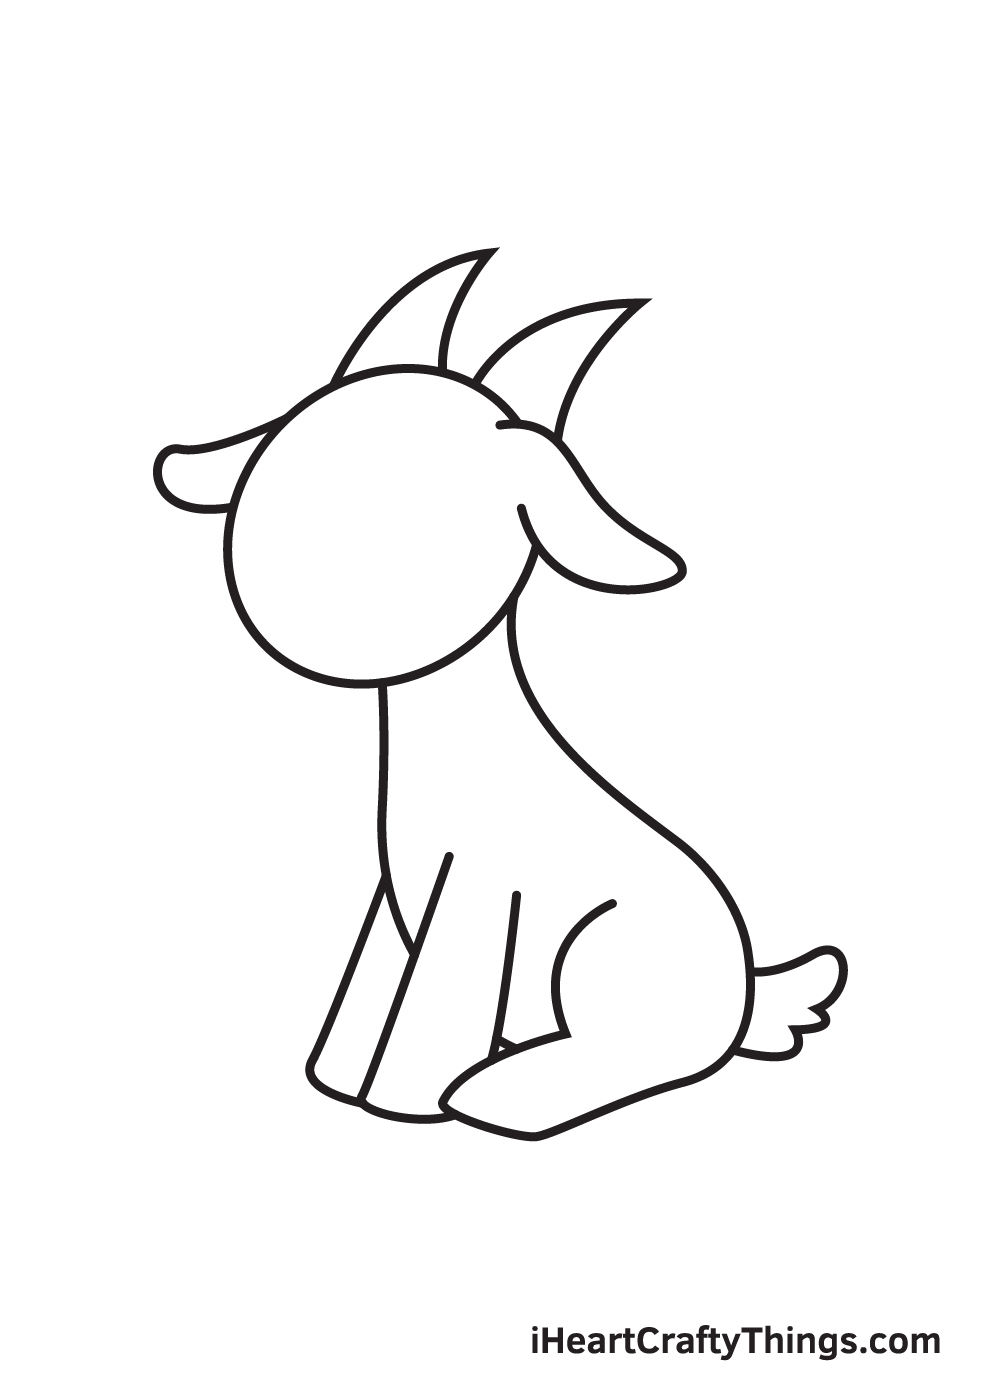 Goat sketch png images | PNGEgg